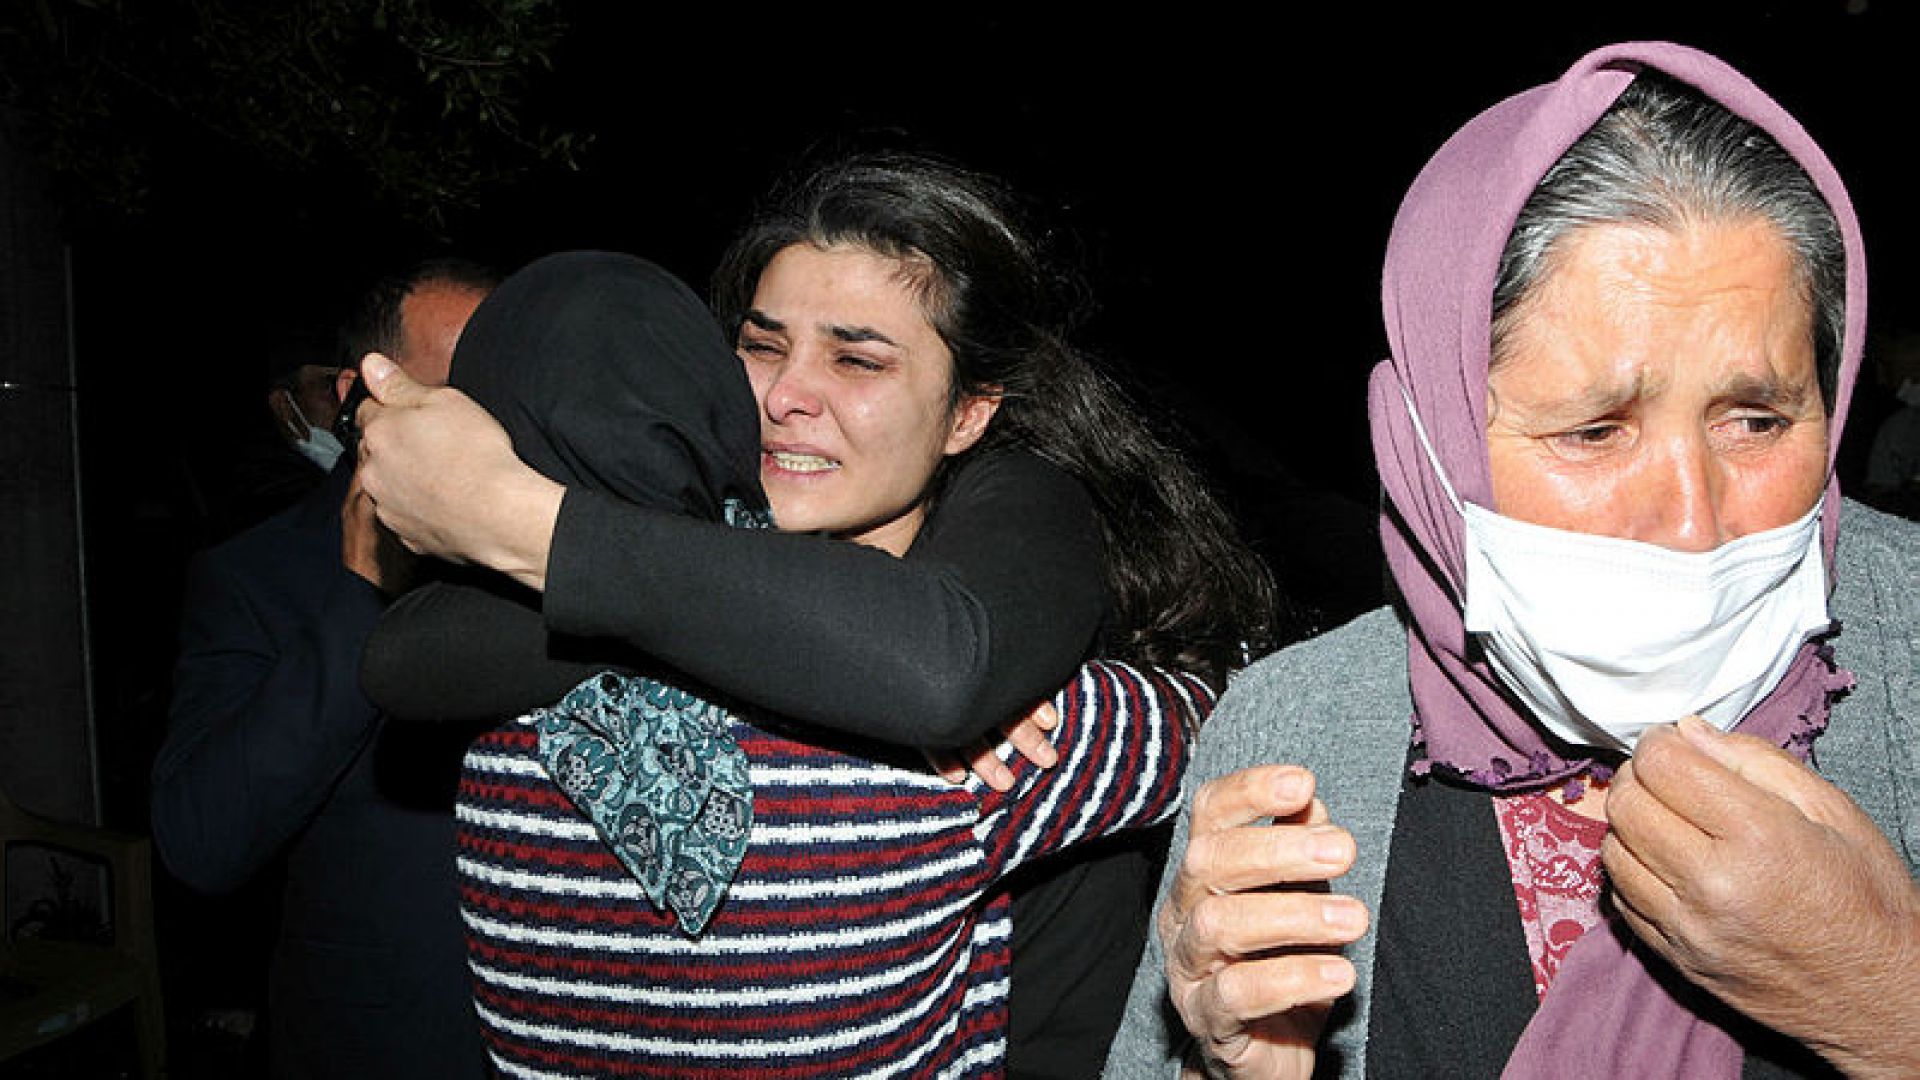 Съдът освободи туркиня, застреляла съпруга си след години на насилие (видео)